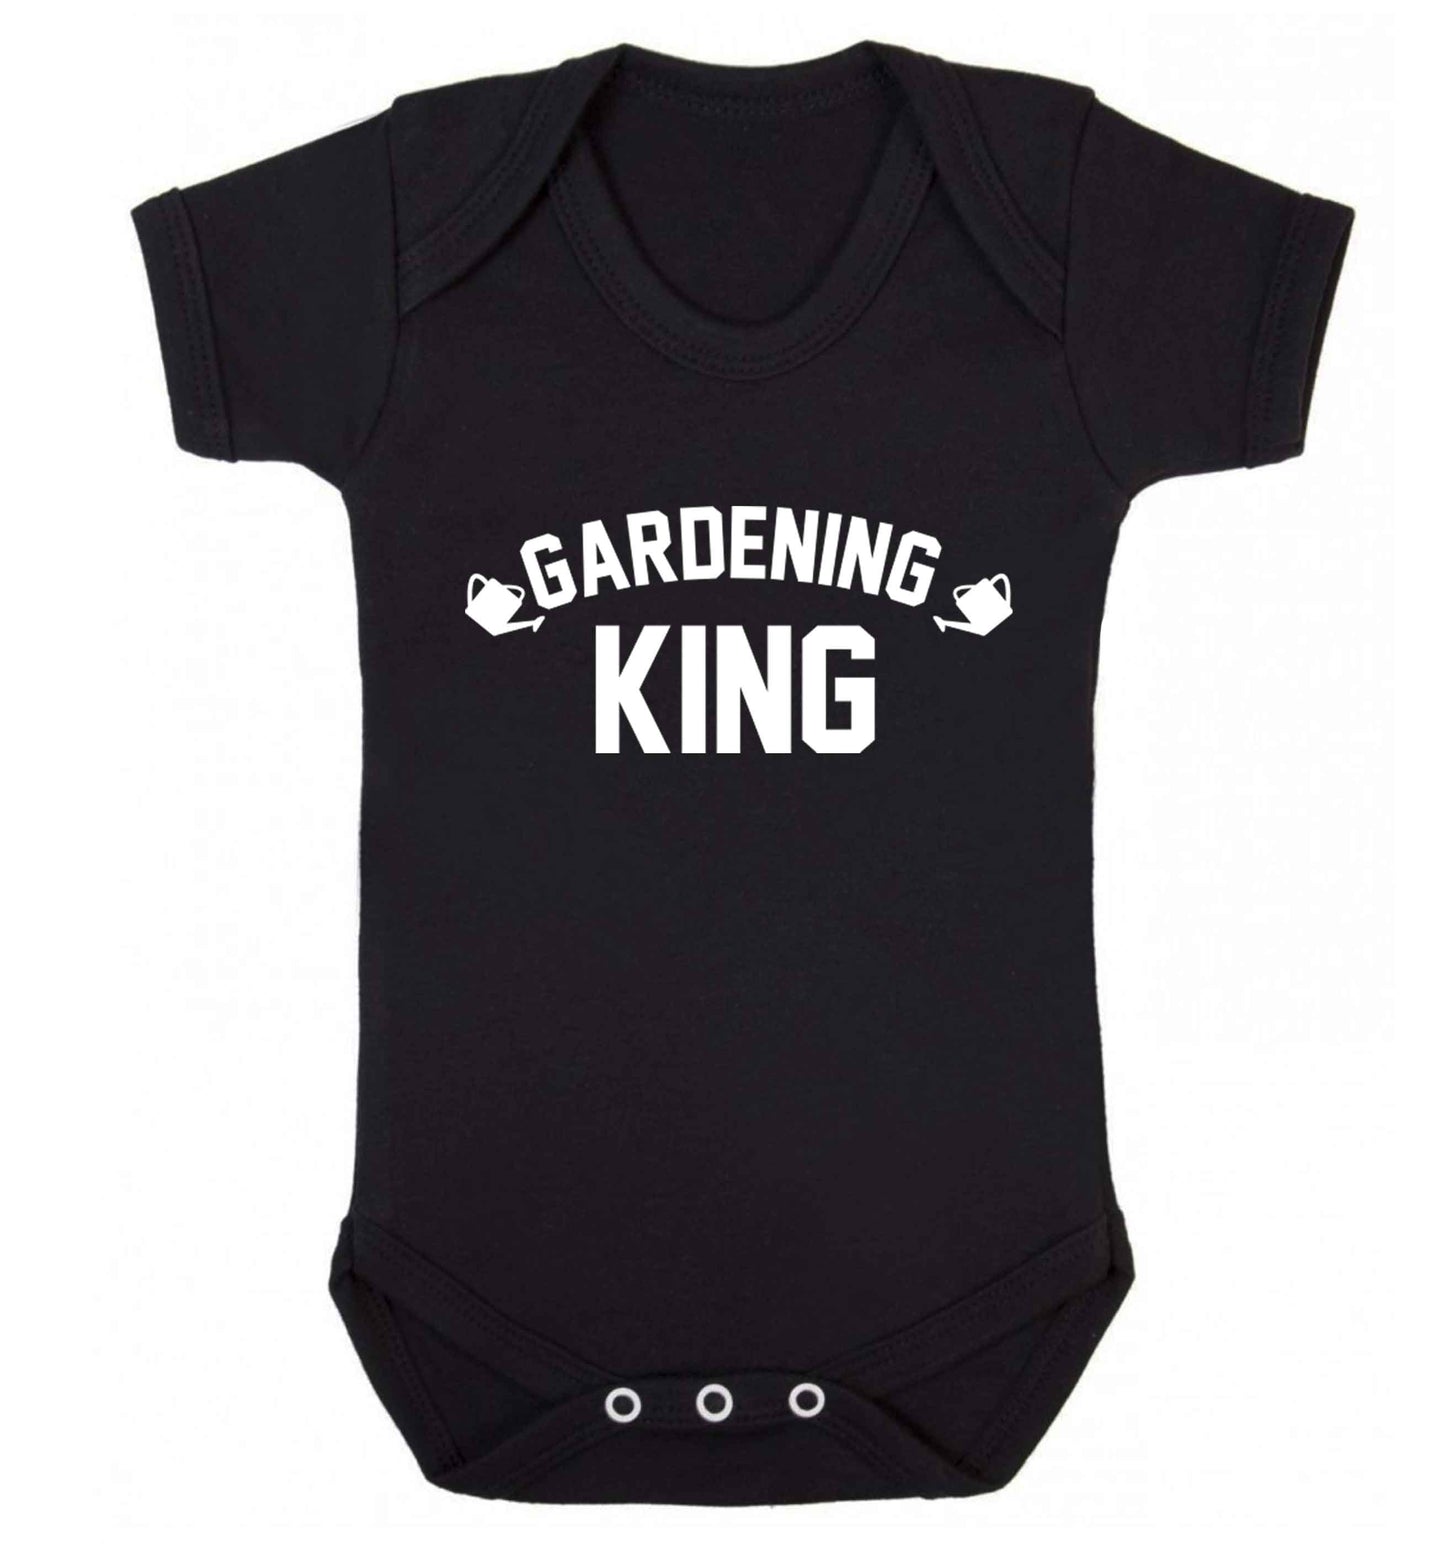 Gardening king Baby Vest black 18-24 months